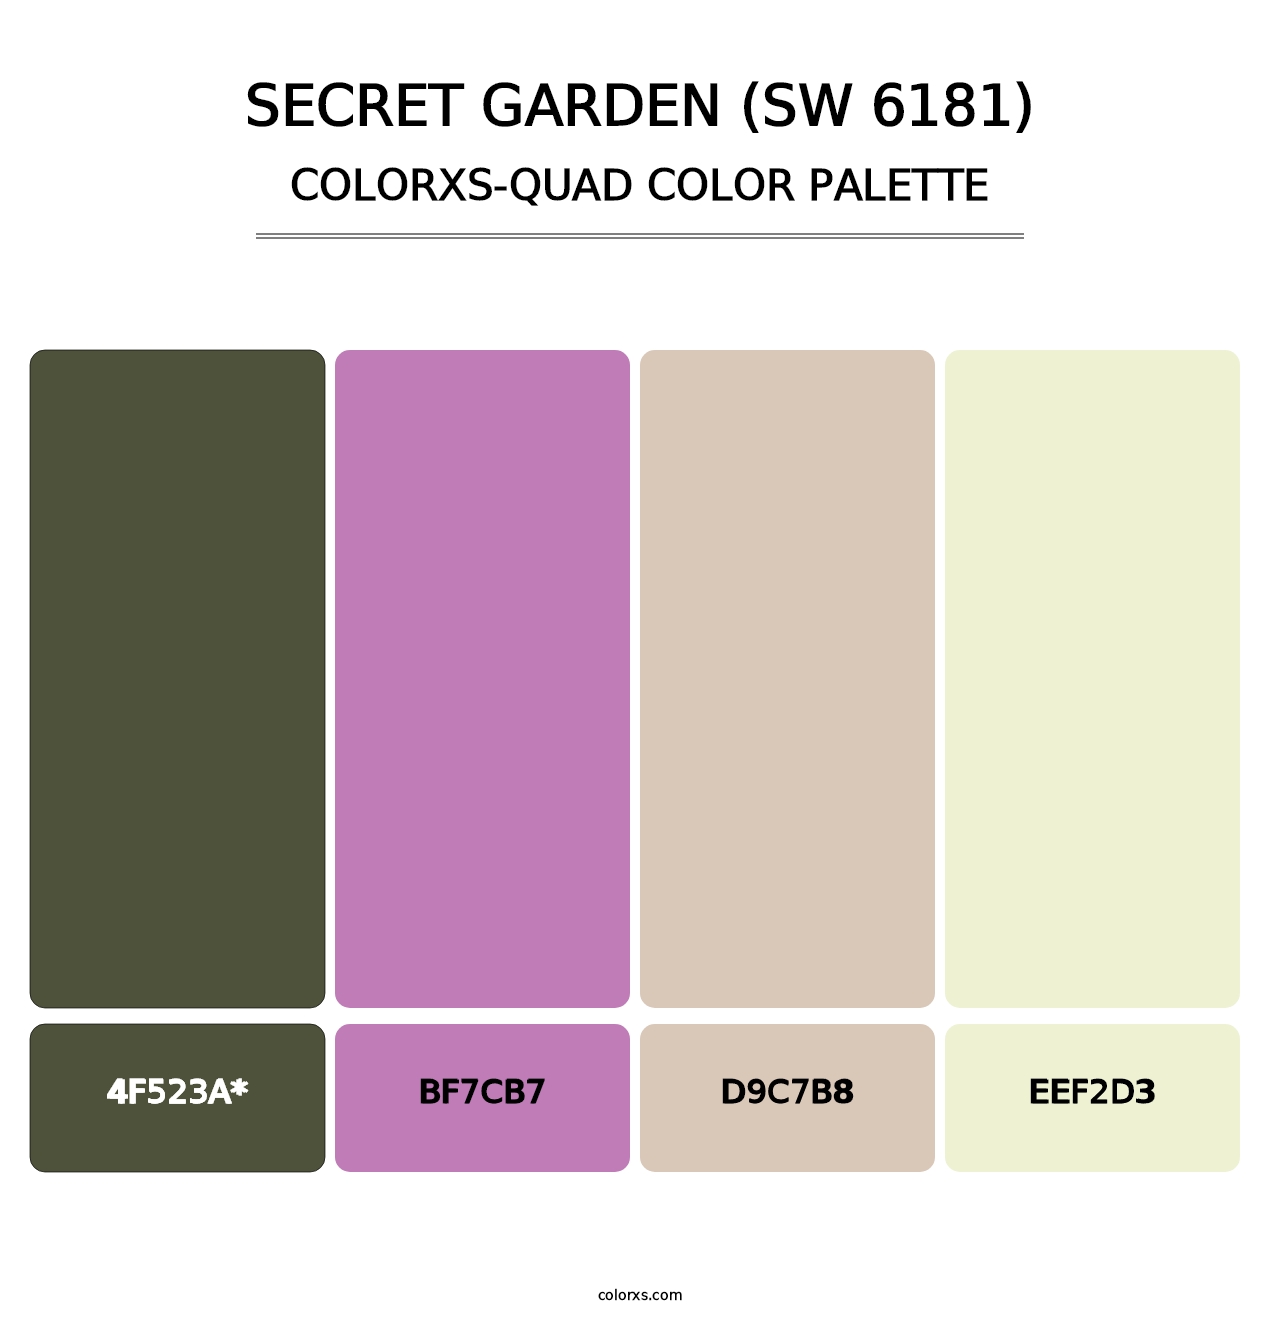 Secret Garden (SW 6181) - Colorxs Quad Palette